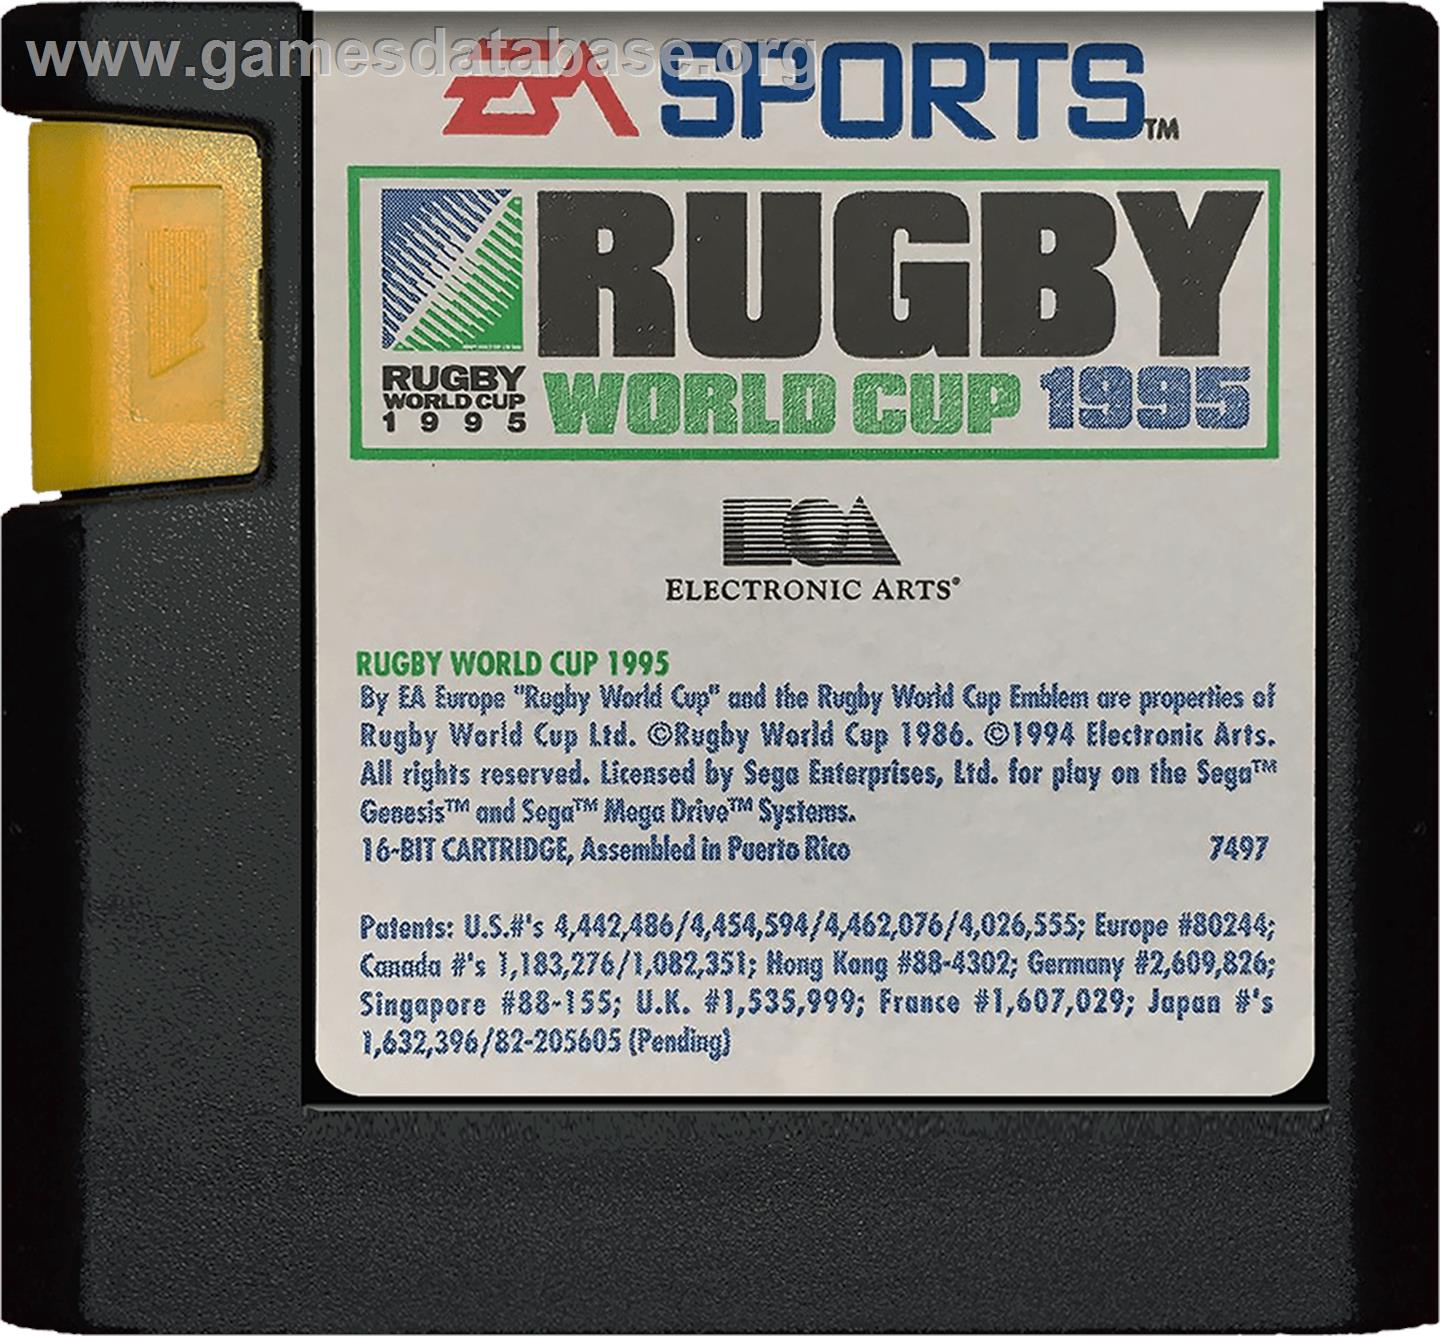 Rugby World Cup 95 - Sega Genesis - Artwork - Cartridge